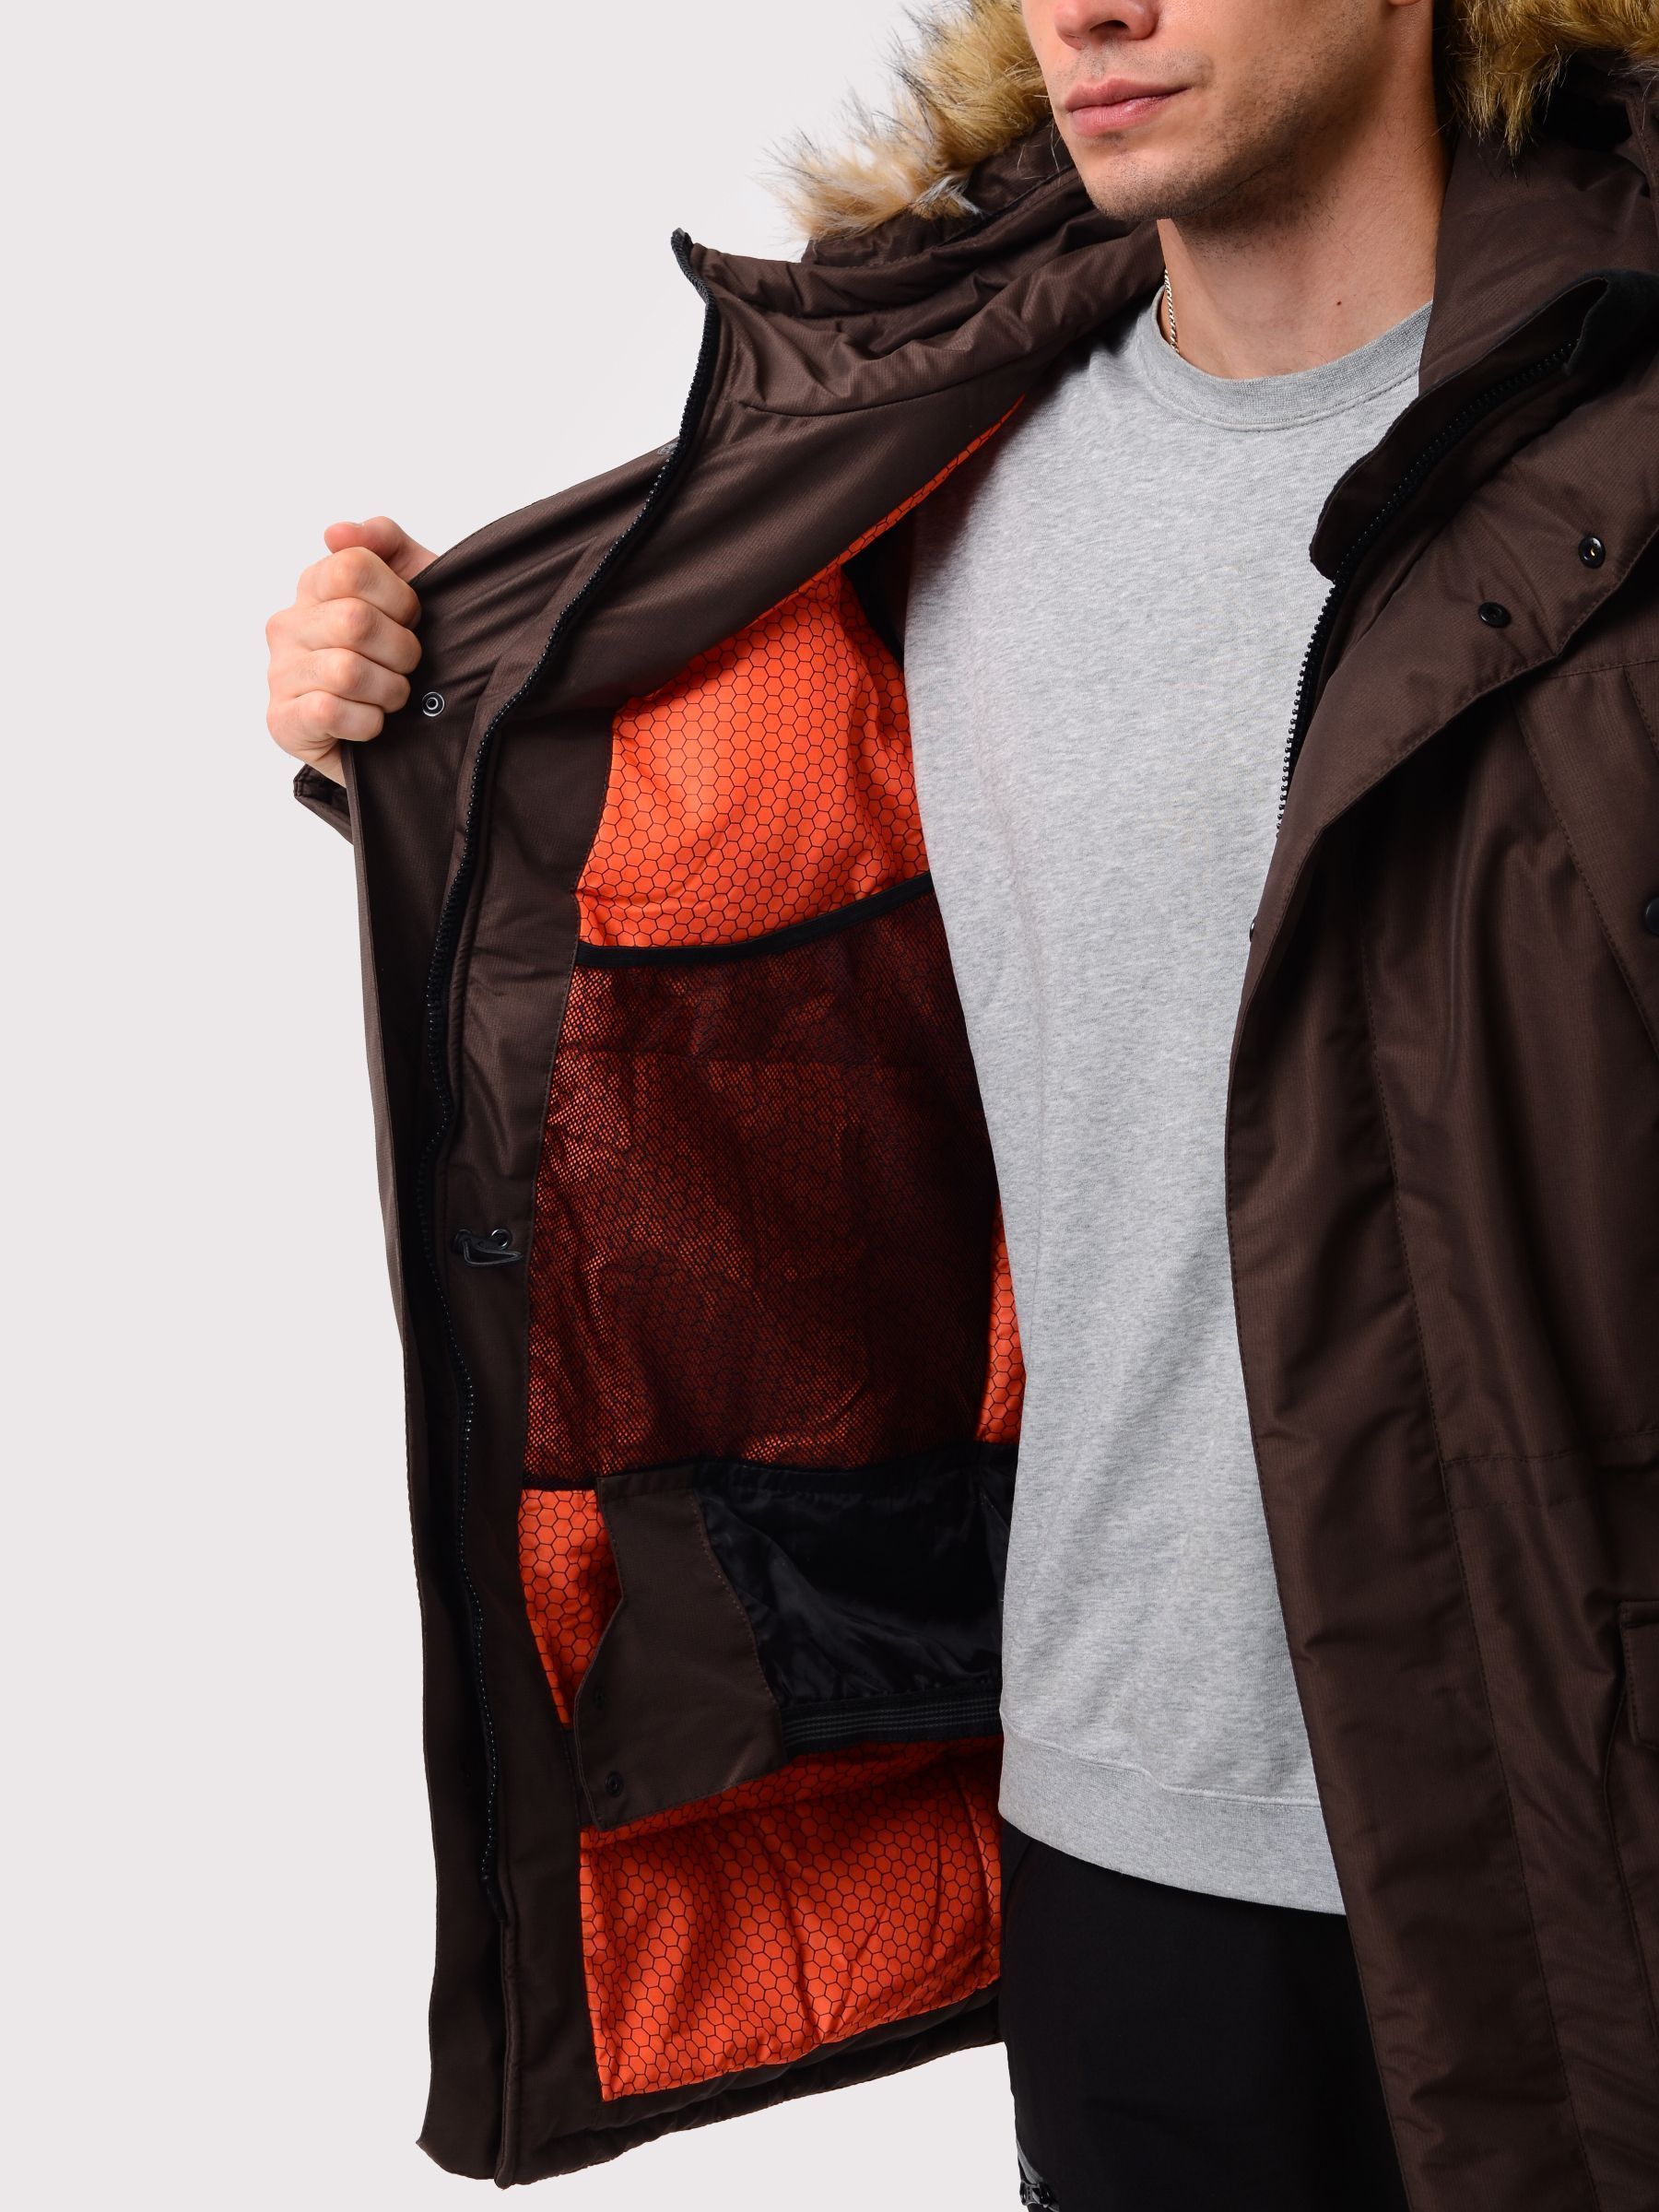 Зимняя мужская мембранная куртка Аляска, цвет шоколад